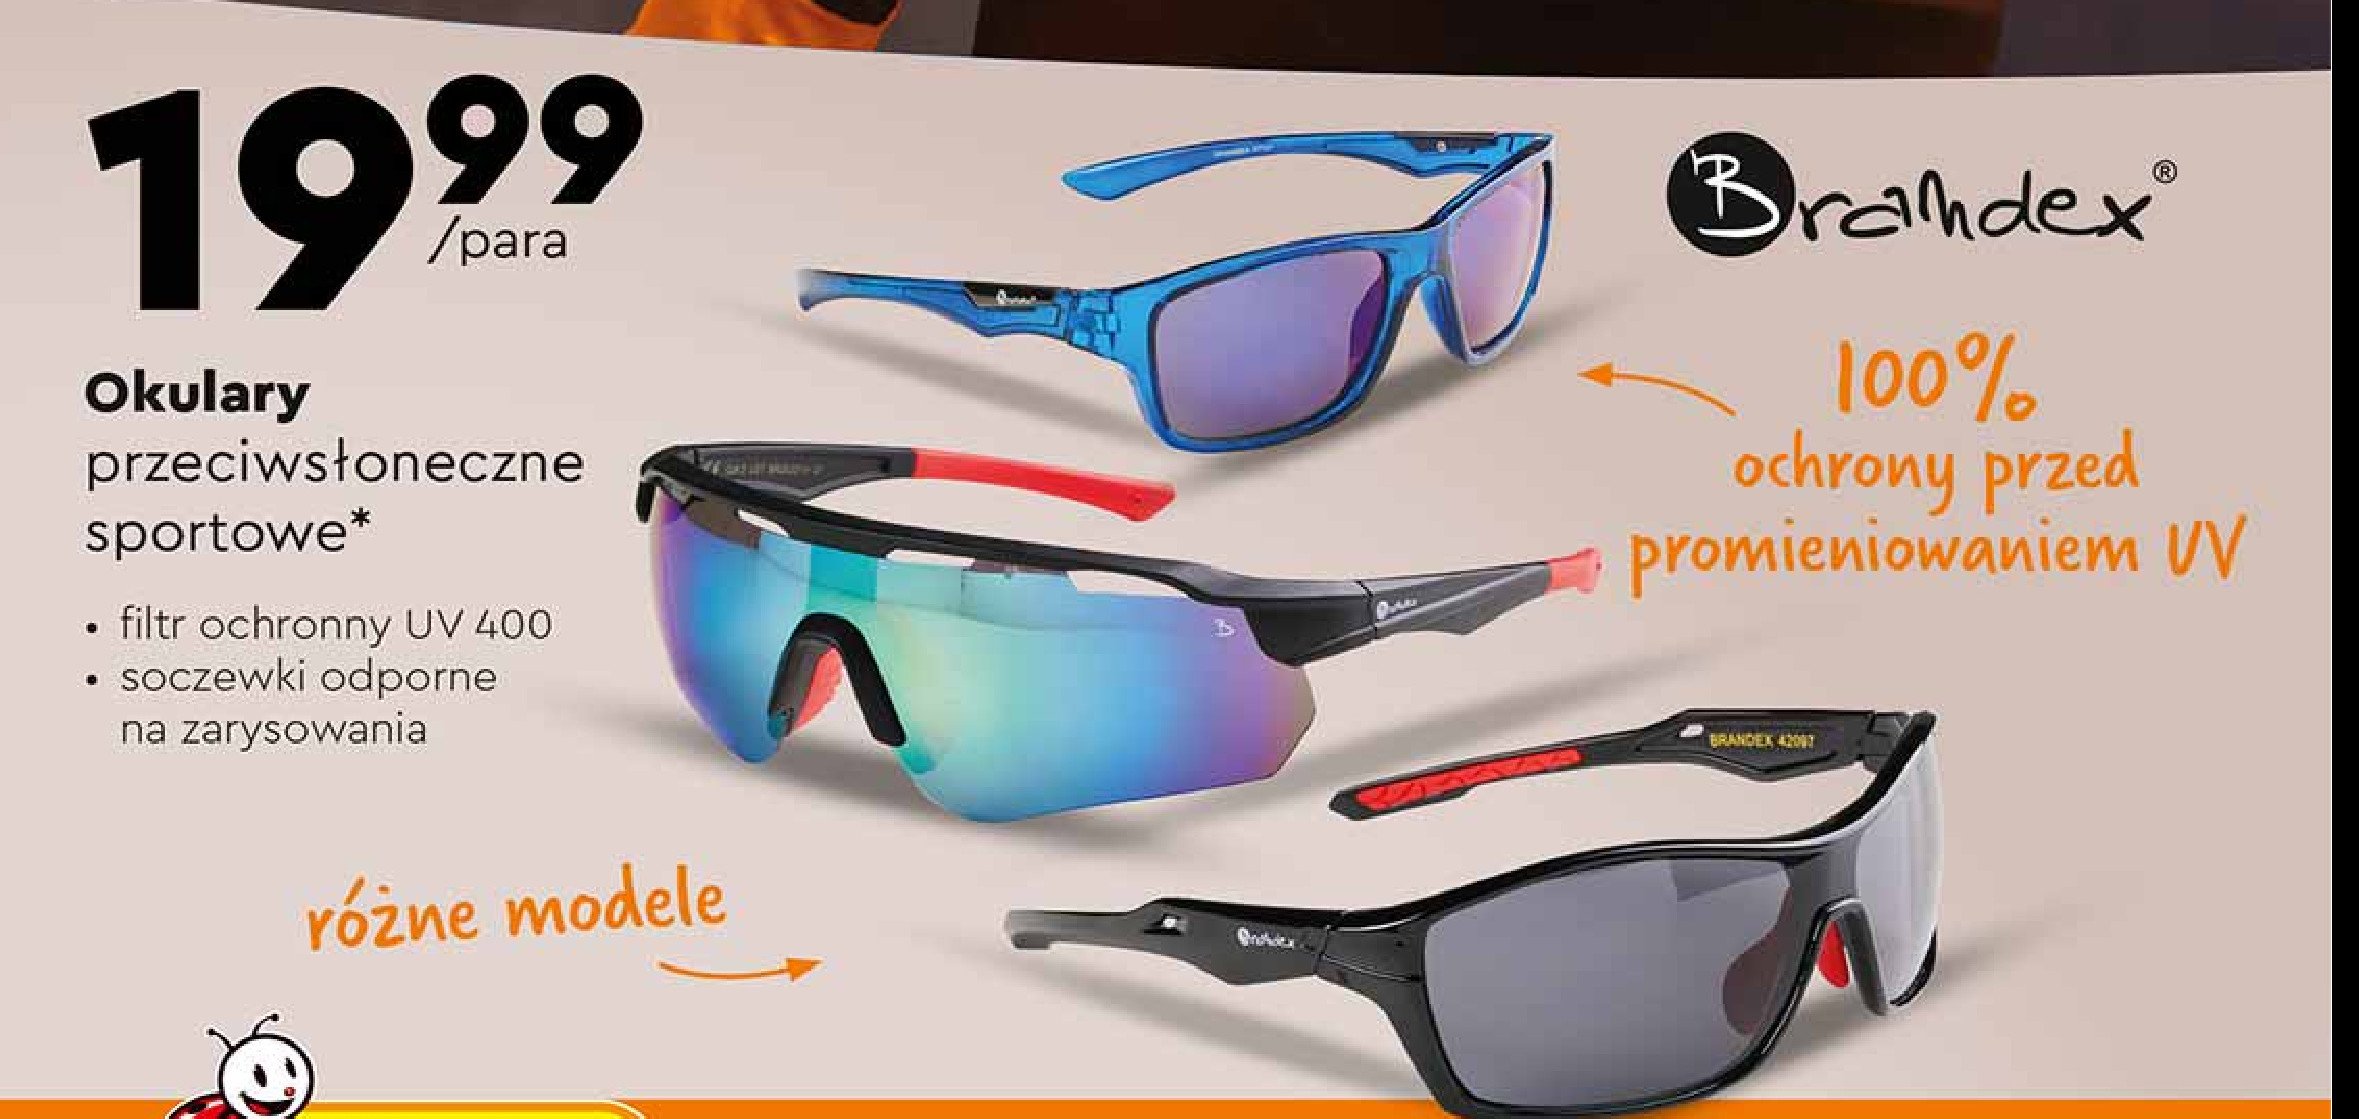 Okulary przeciwsłoneczne Brandex promocja